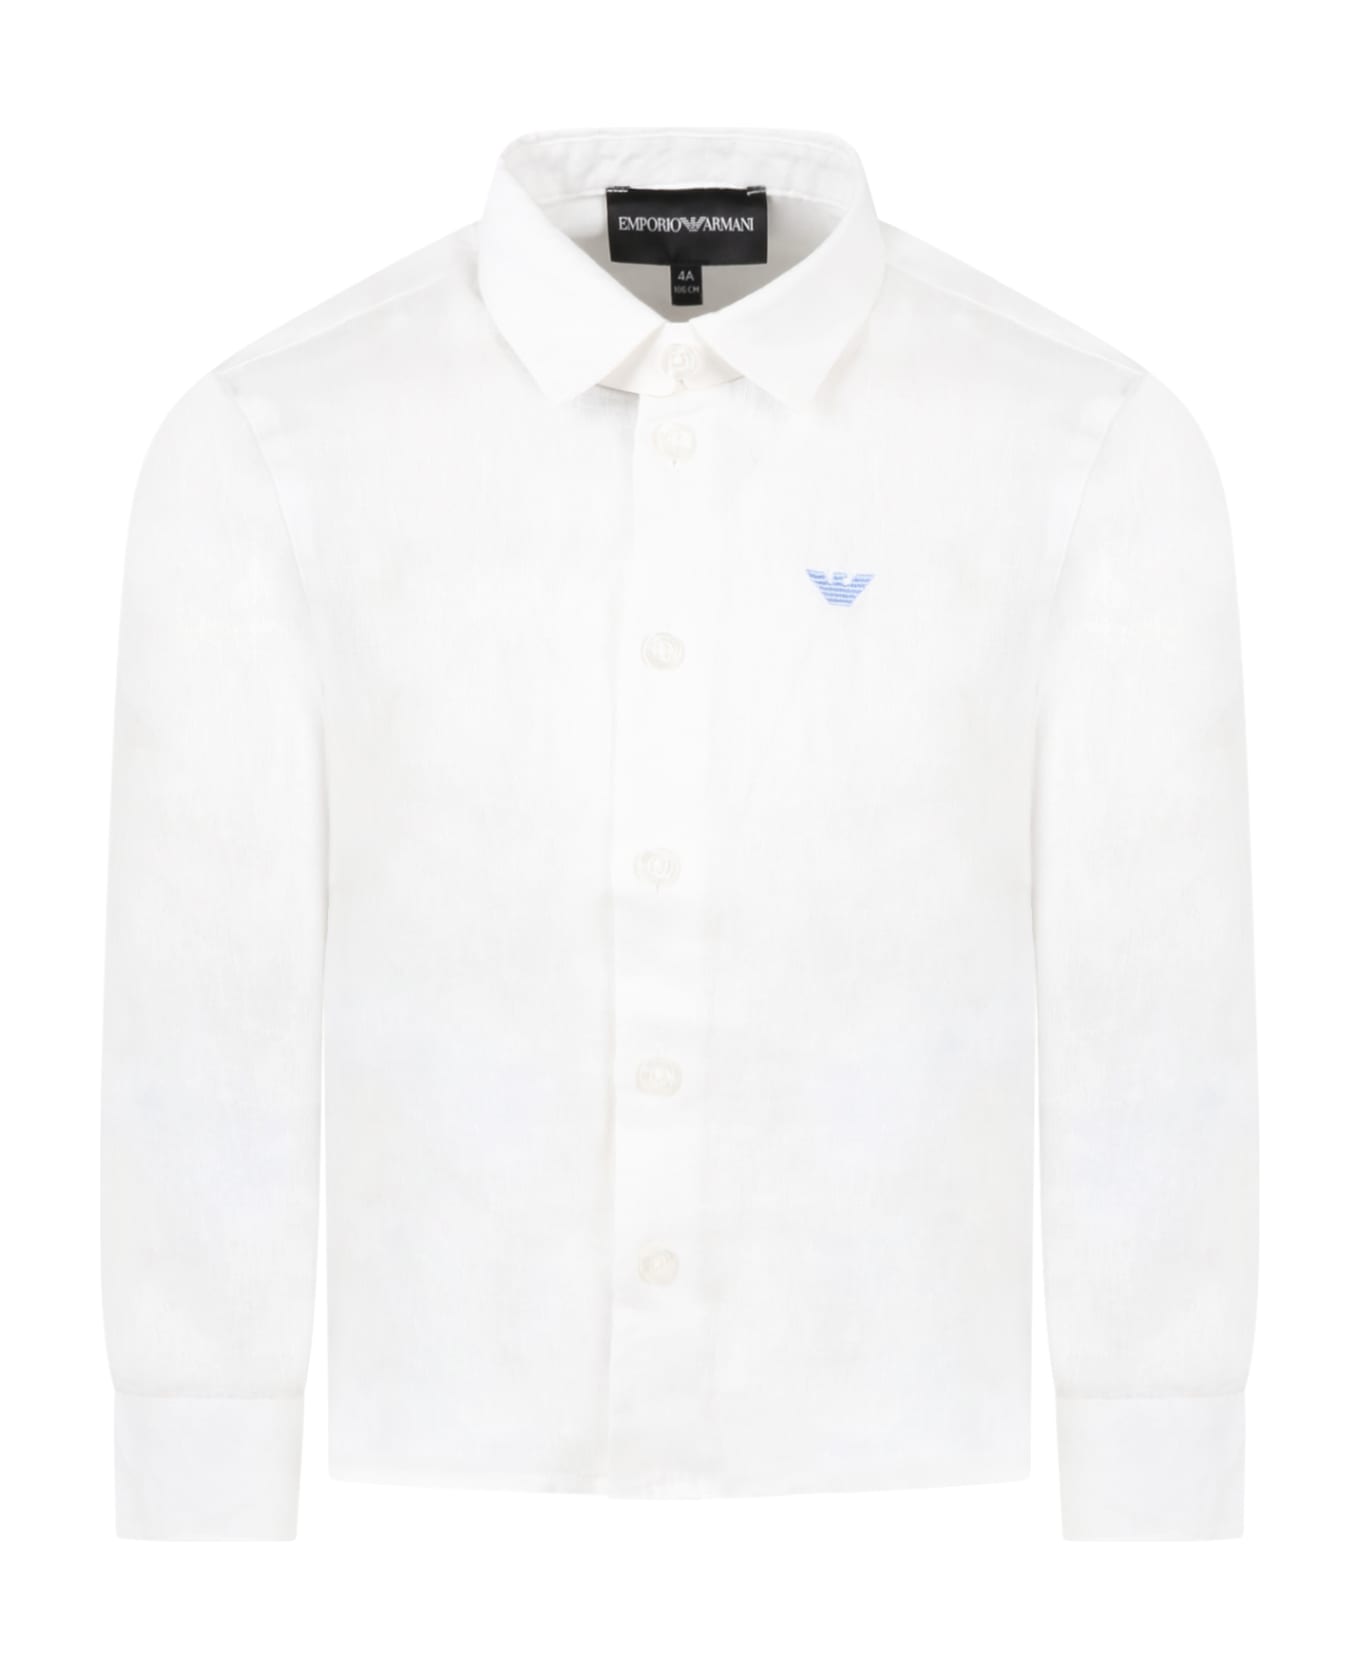 Emporio Armani White Skirt For Boy With Light Blue Iconic Eagle Logo - White